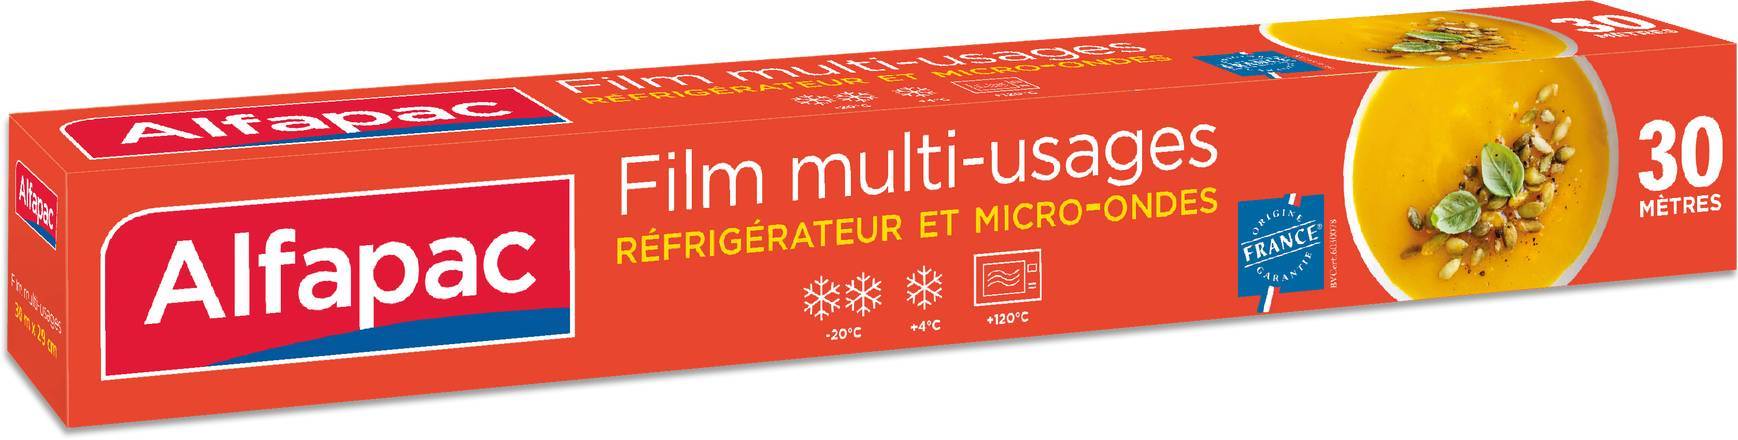 Film multi-usages 30m x 0,29